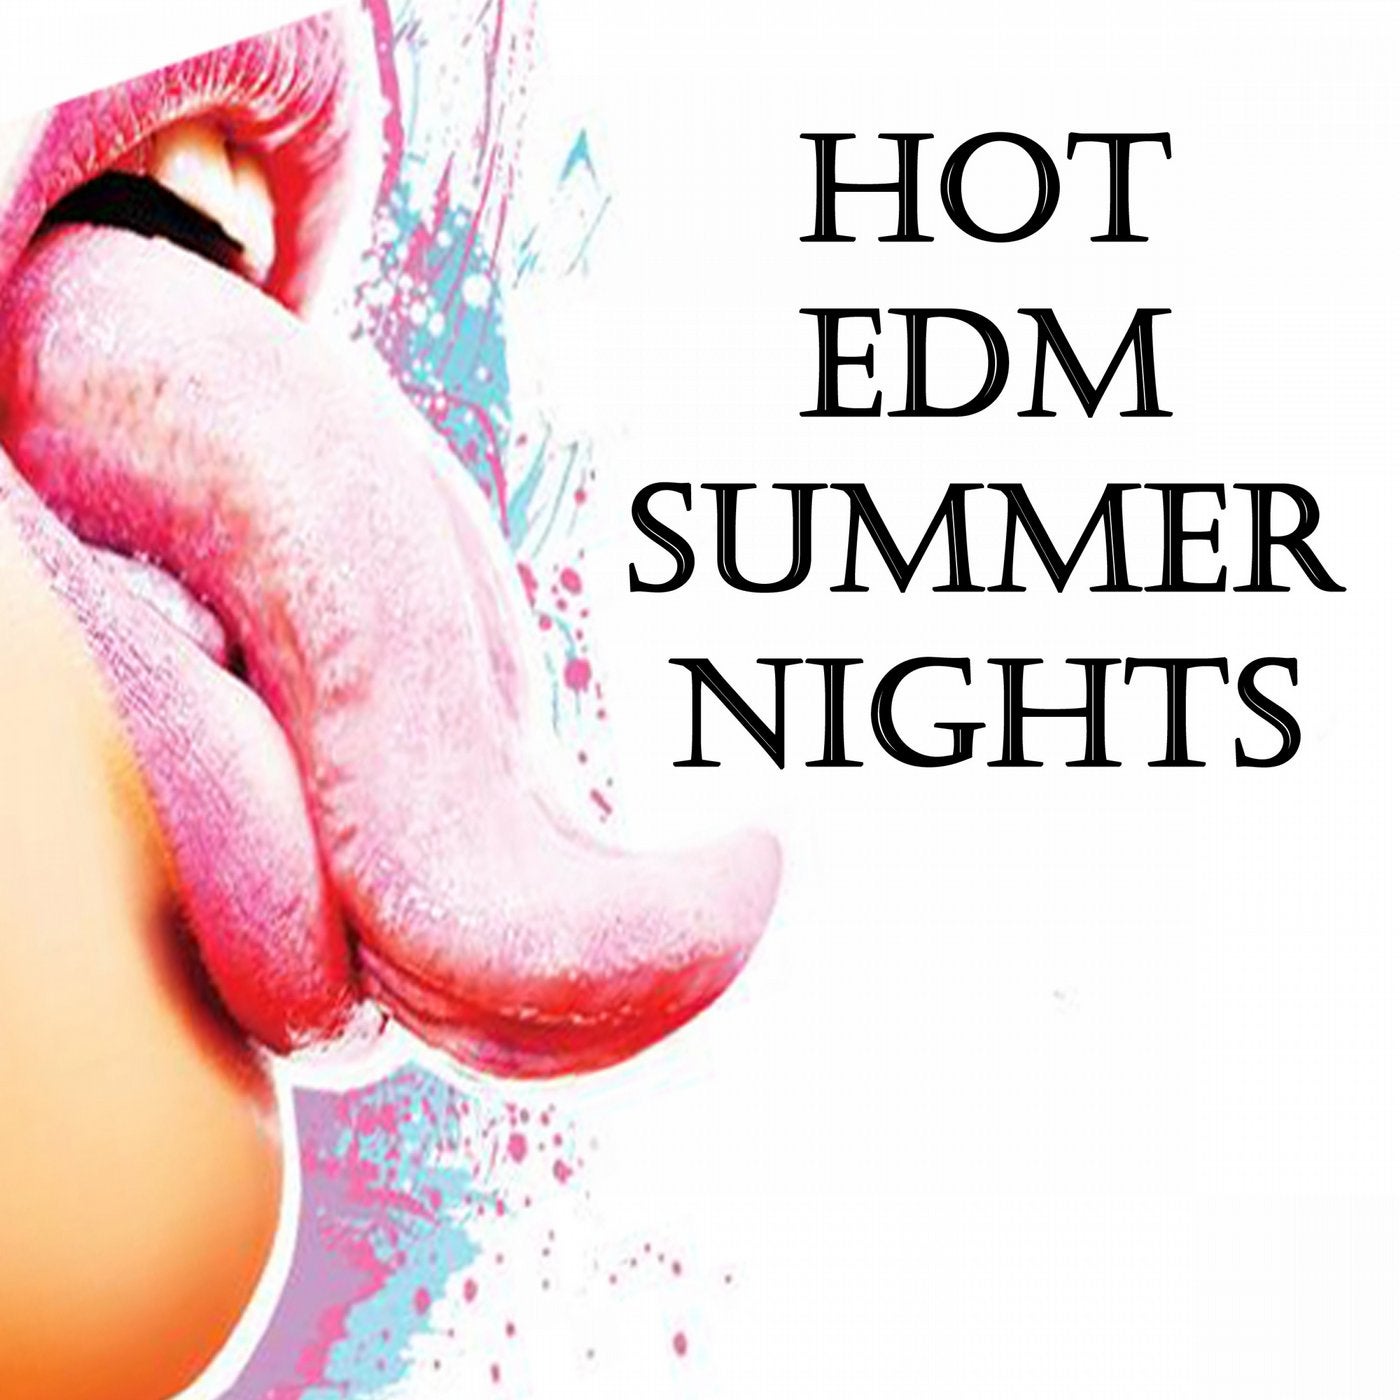 Hot EDM Summer Nights Megamix (The Best Electro House, Electronic Dance, EDM, Techno, House & Progressive Trance)